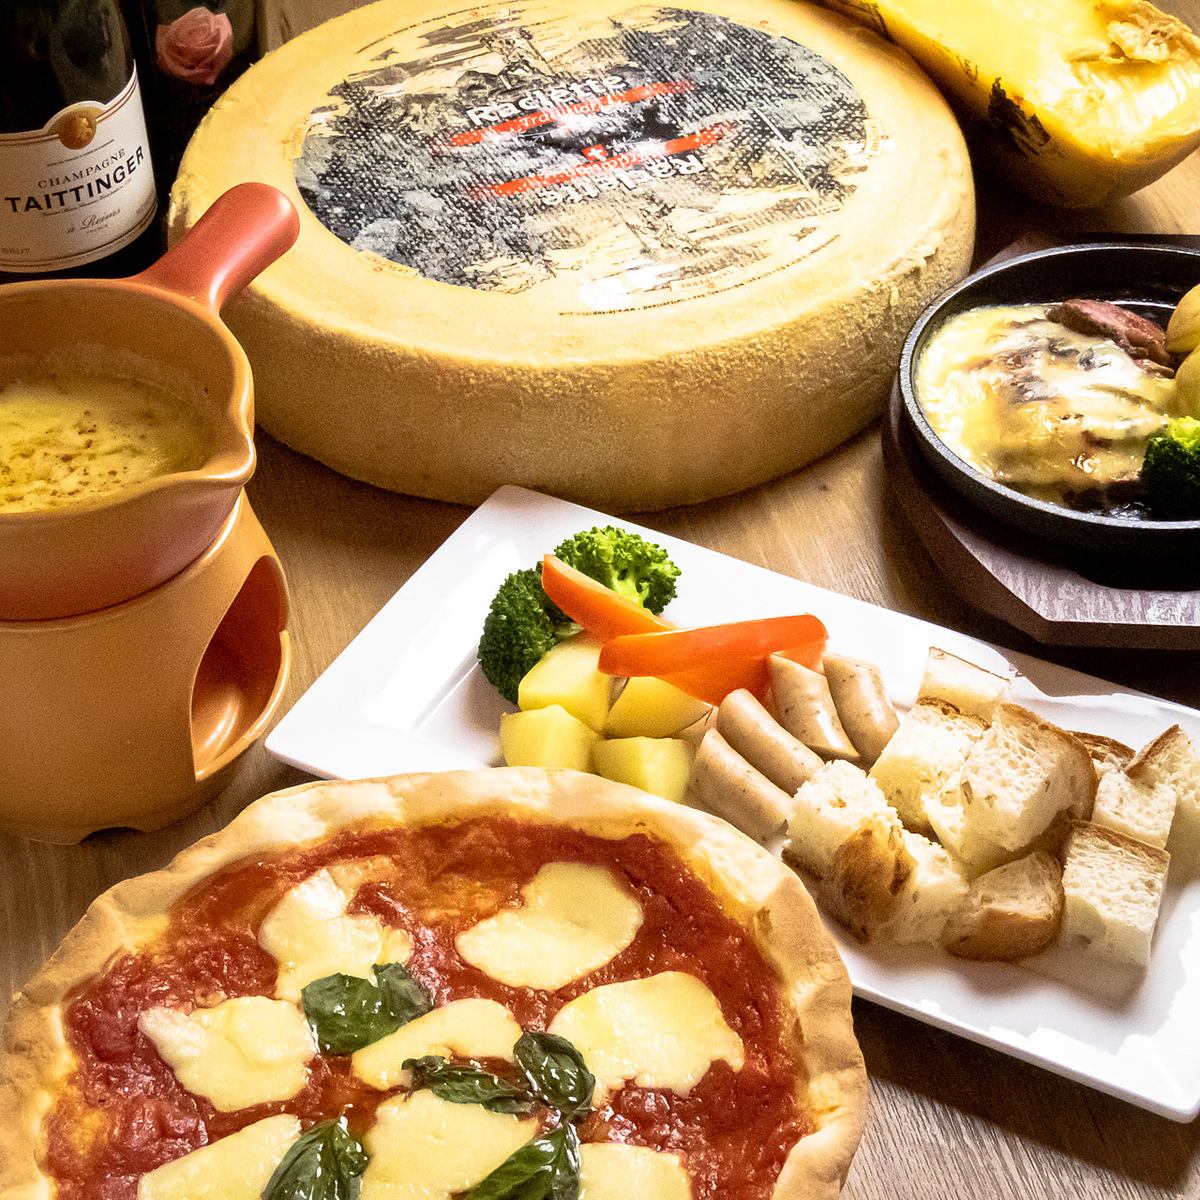 我們將提供融化您心中的奢華。享受真正的奶酪。